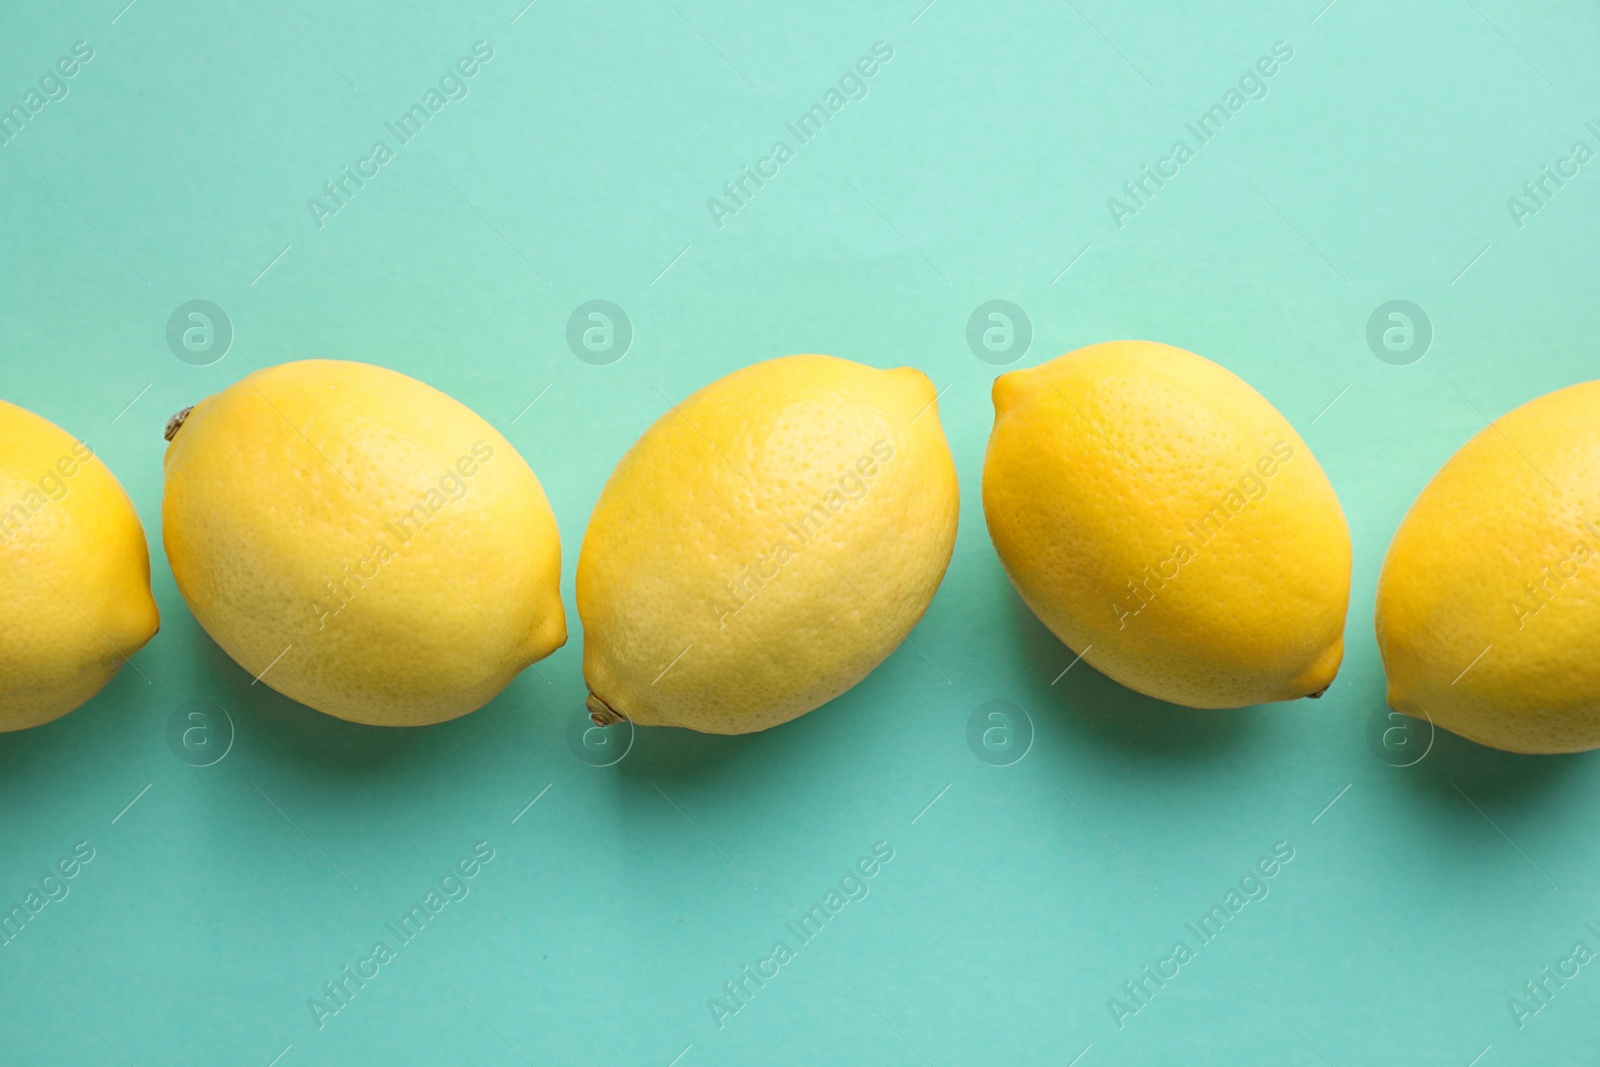 Photo of Fresh lemons on turquoise background, flat lay